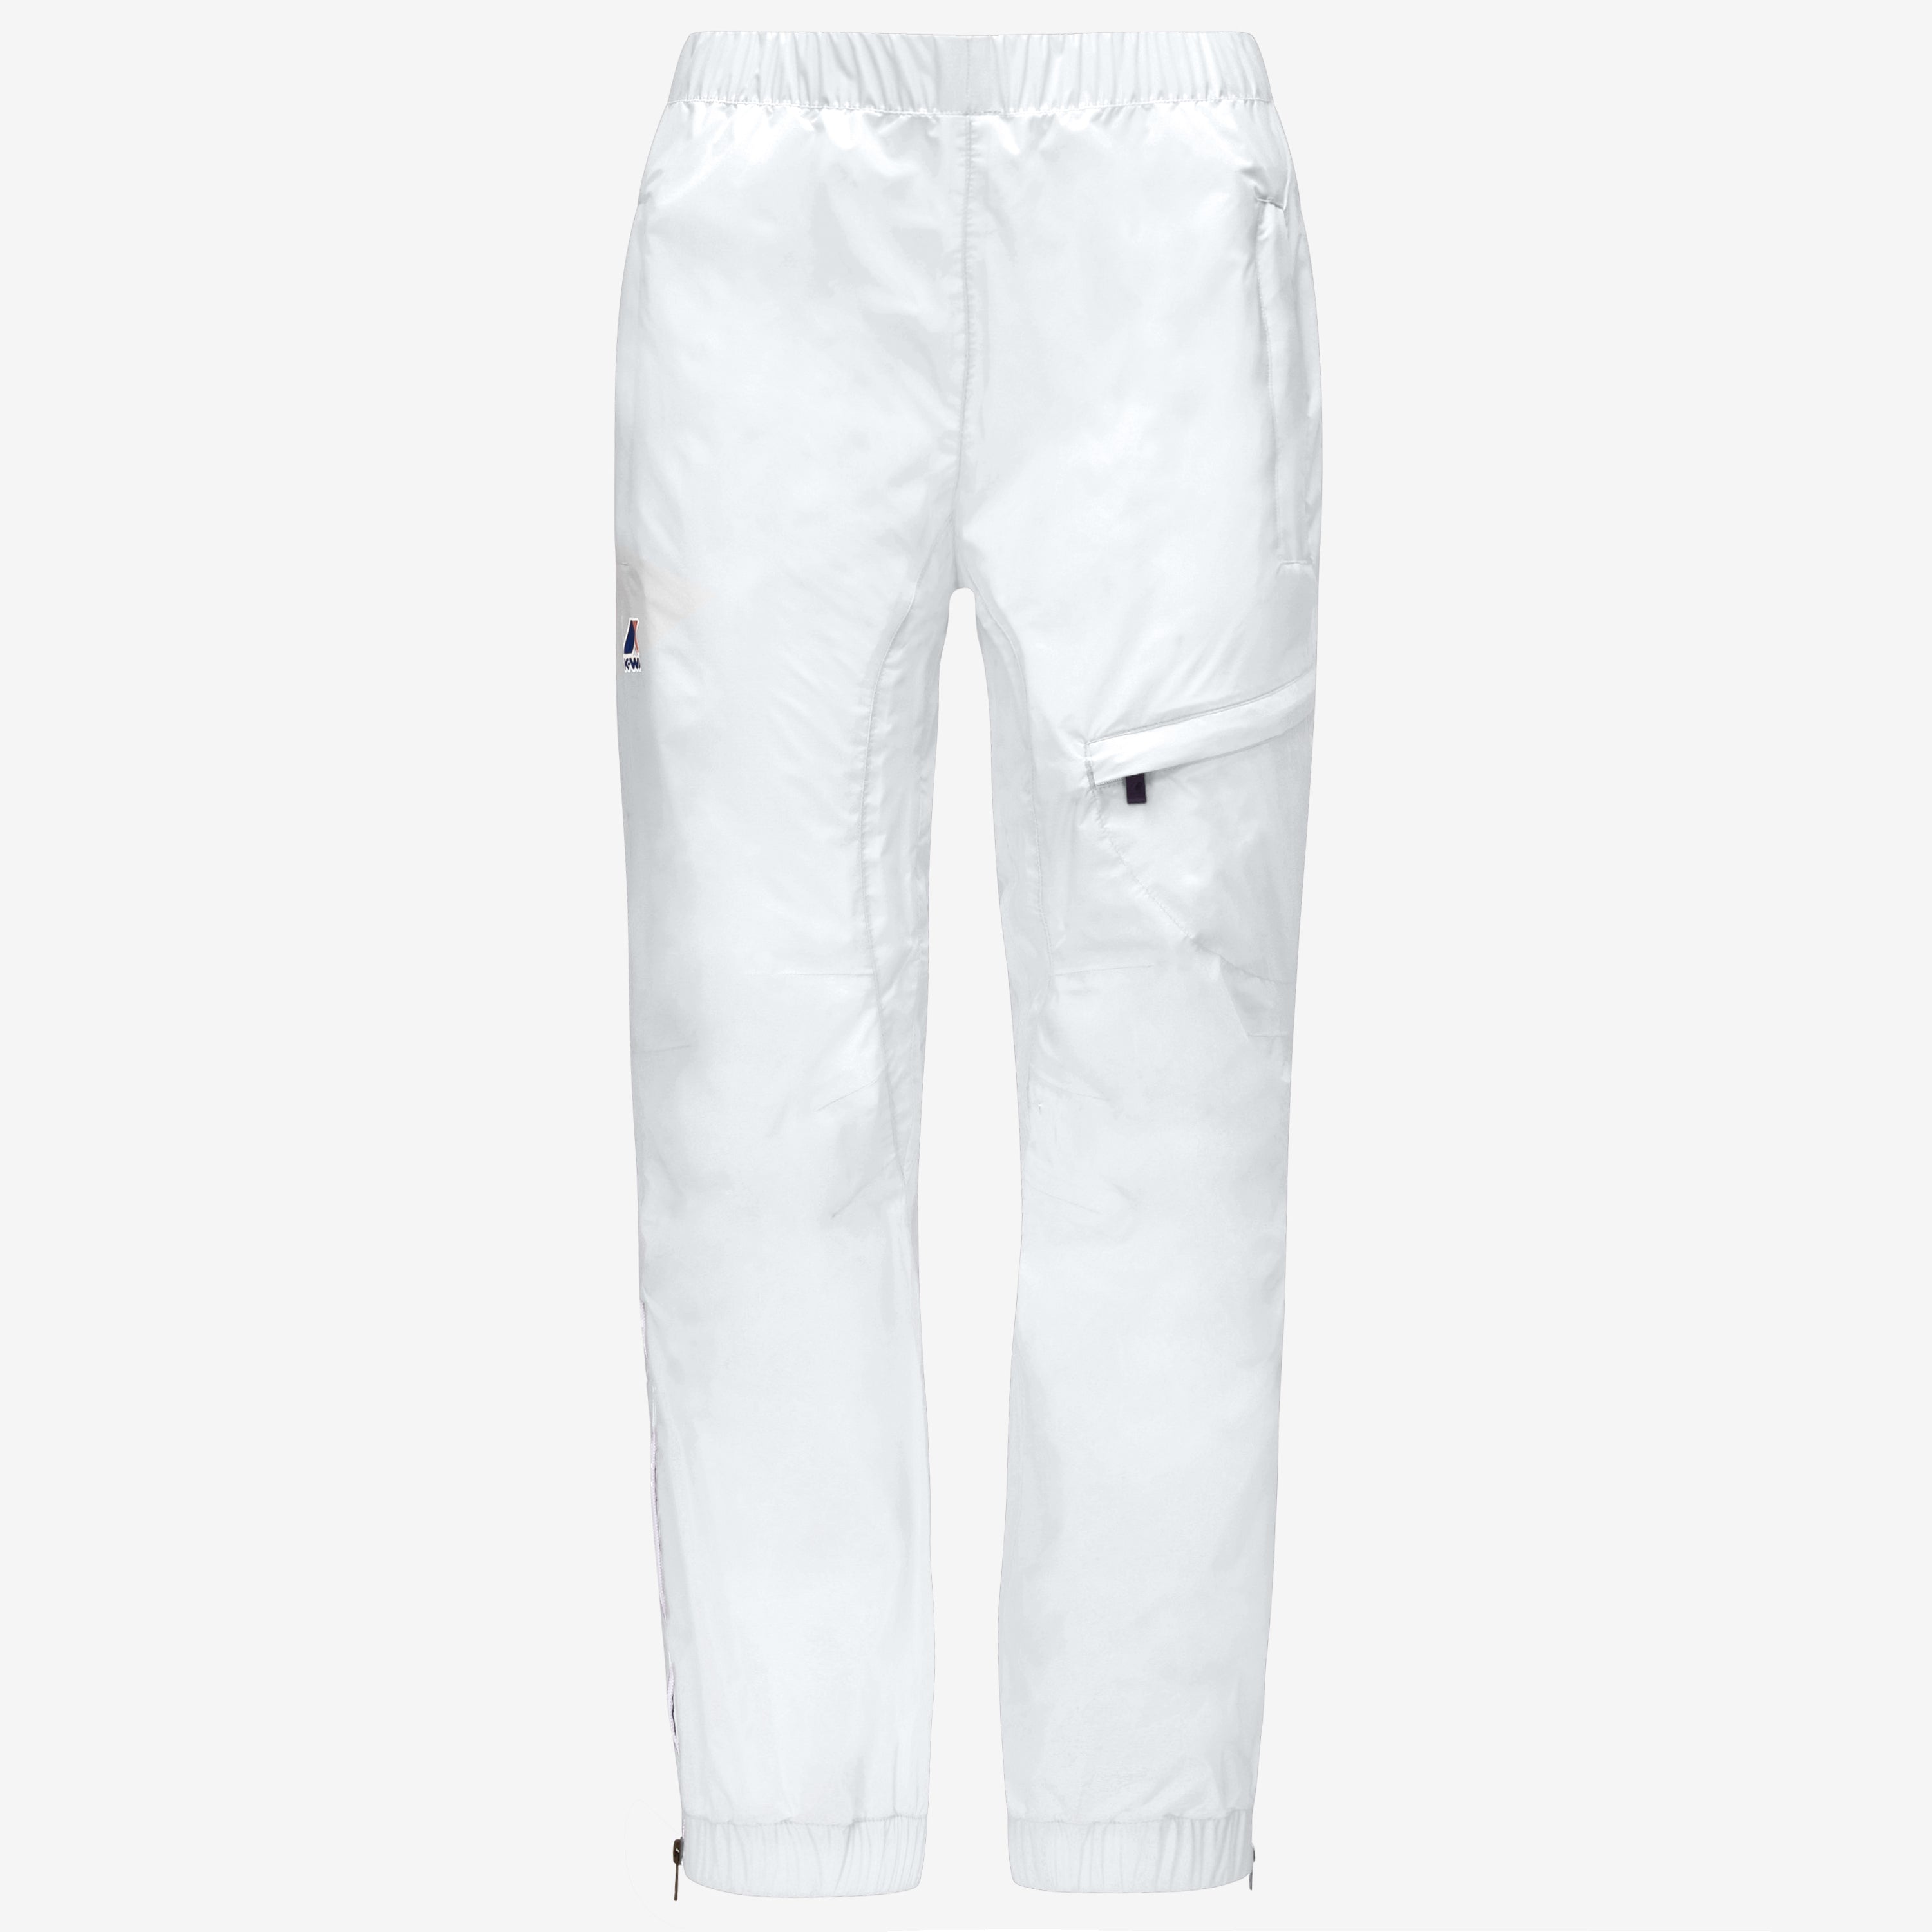 Edgard - Kids Waterproof Pants in White